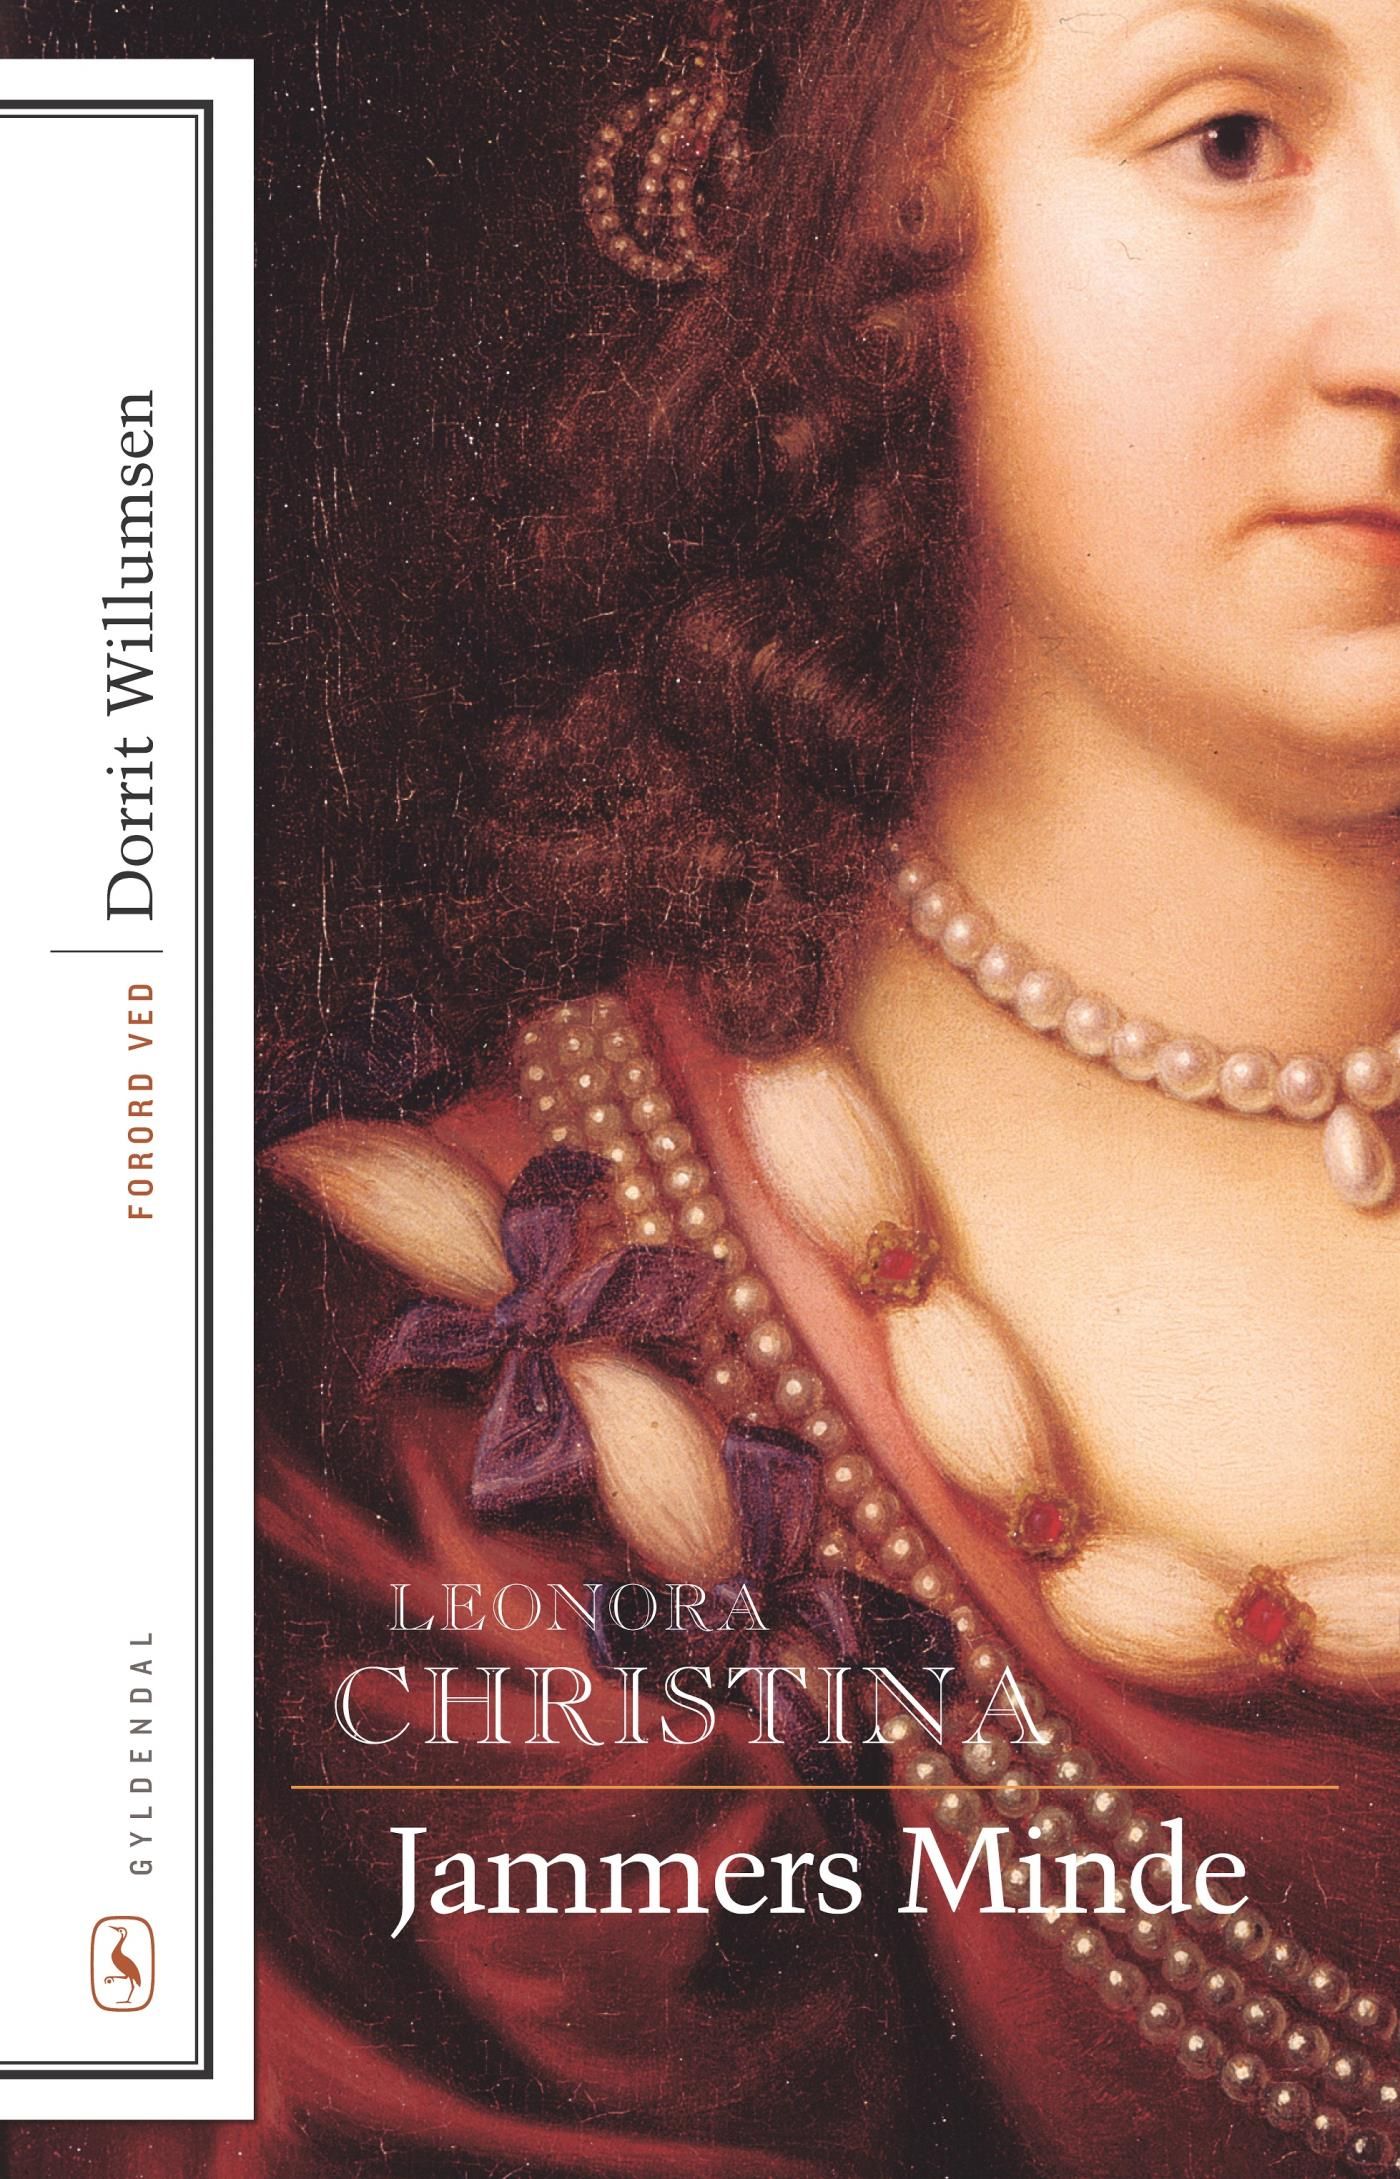 Jammers Minde, e-bog af Leonora Christina